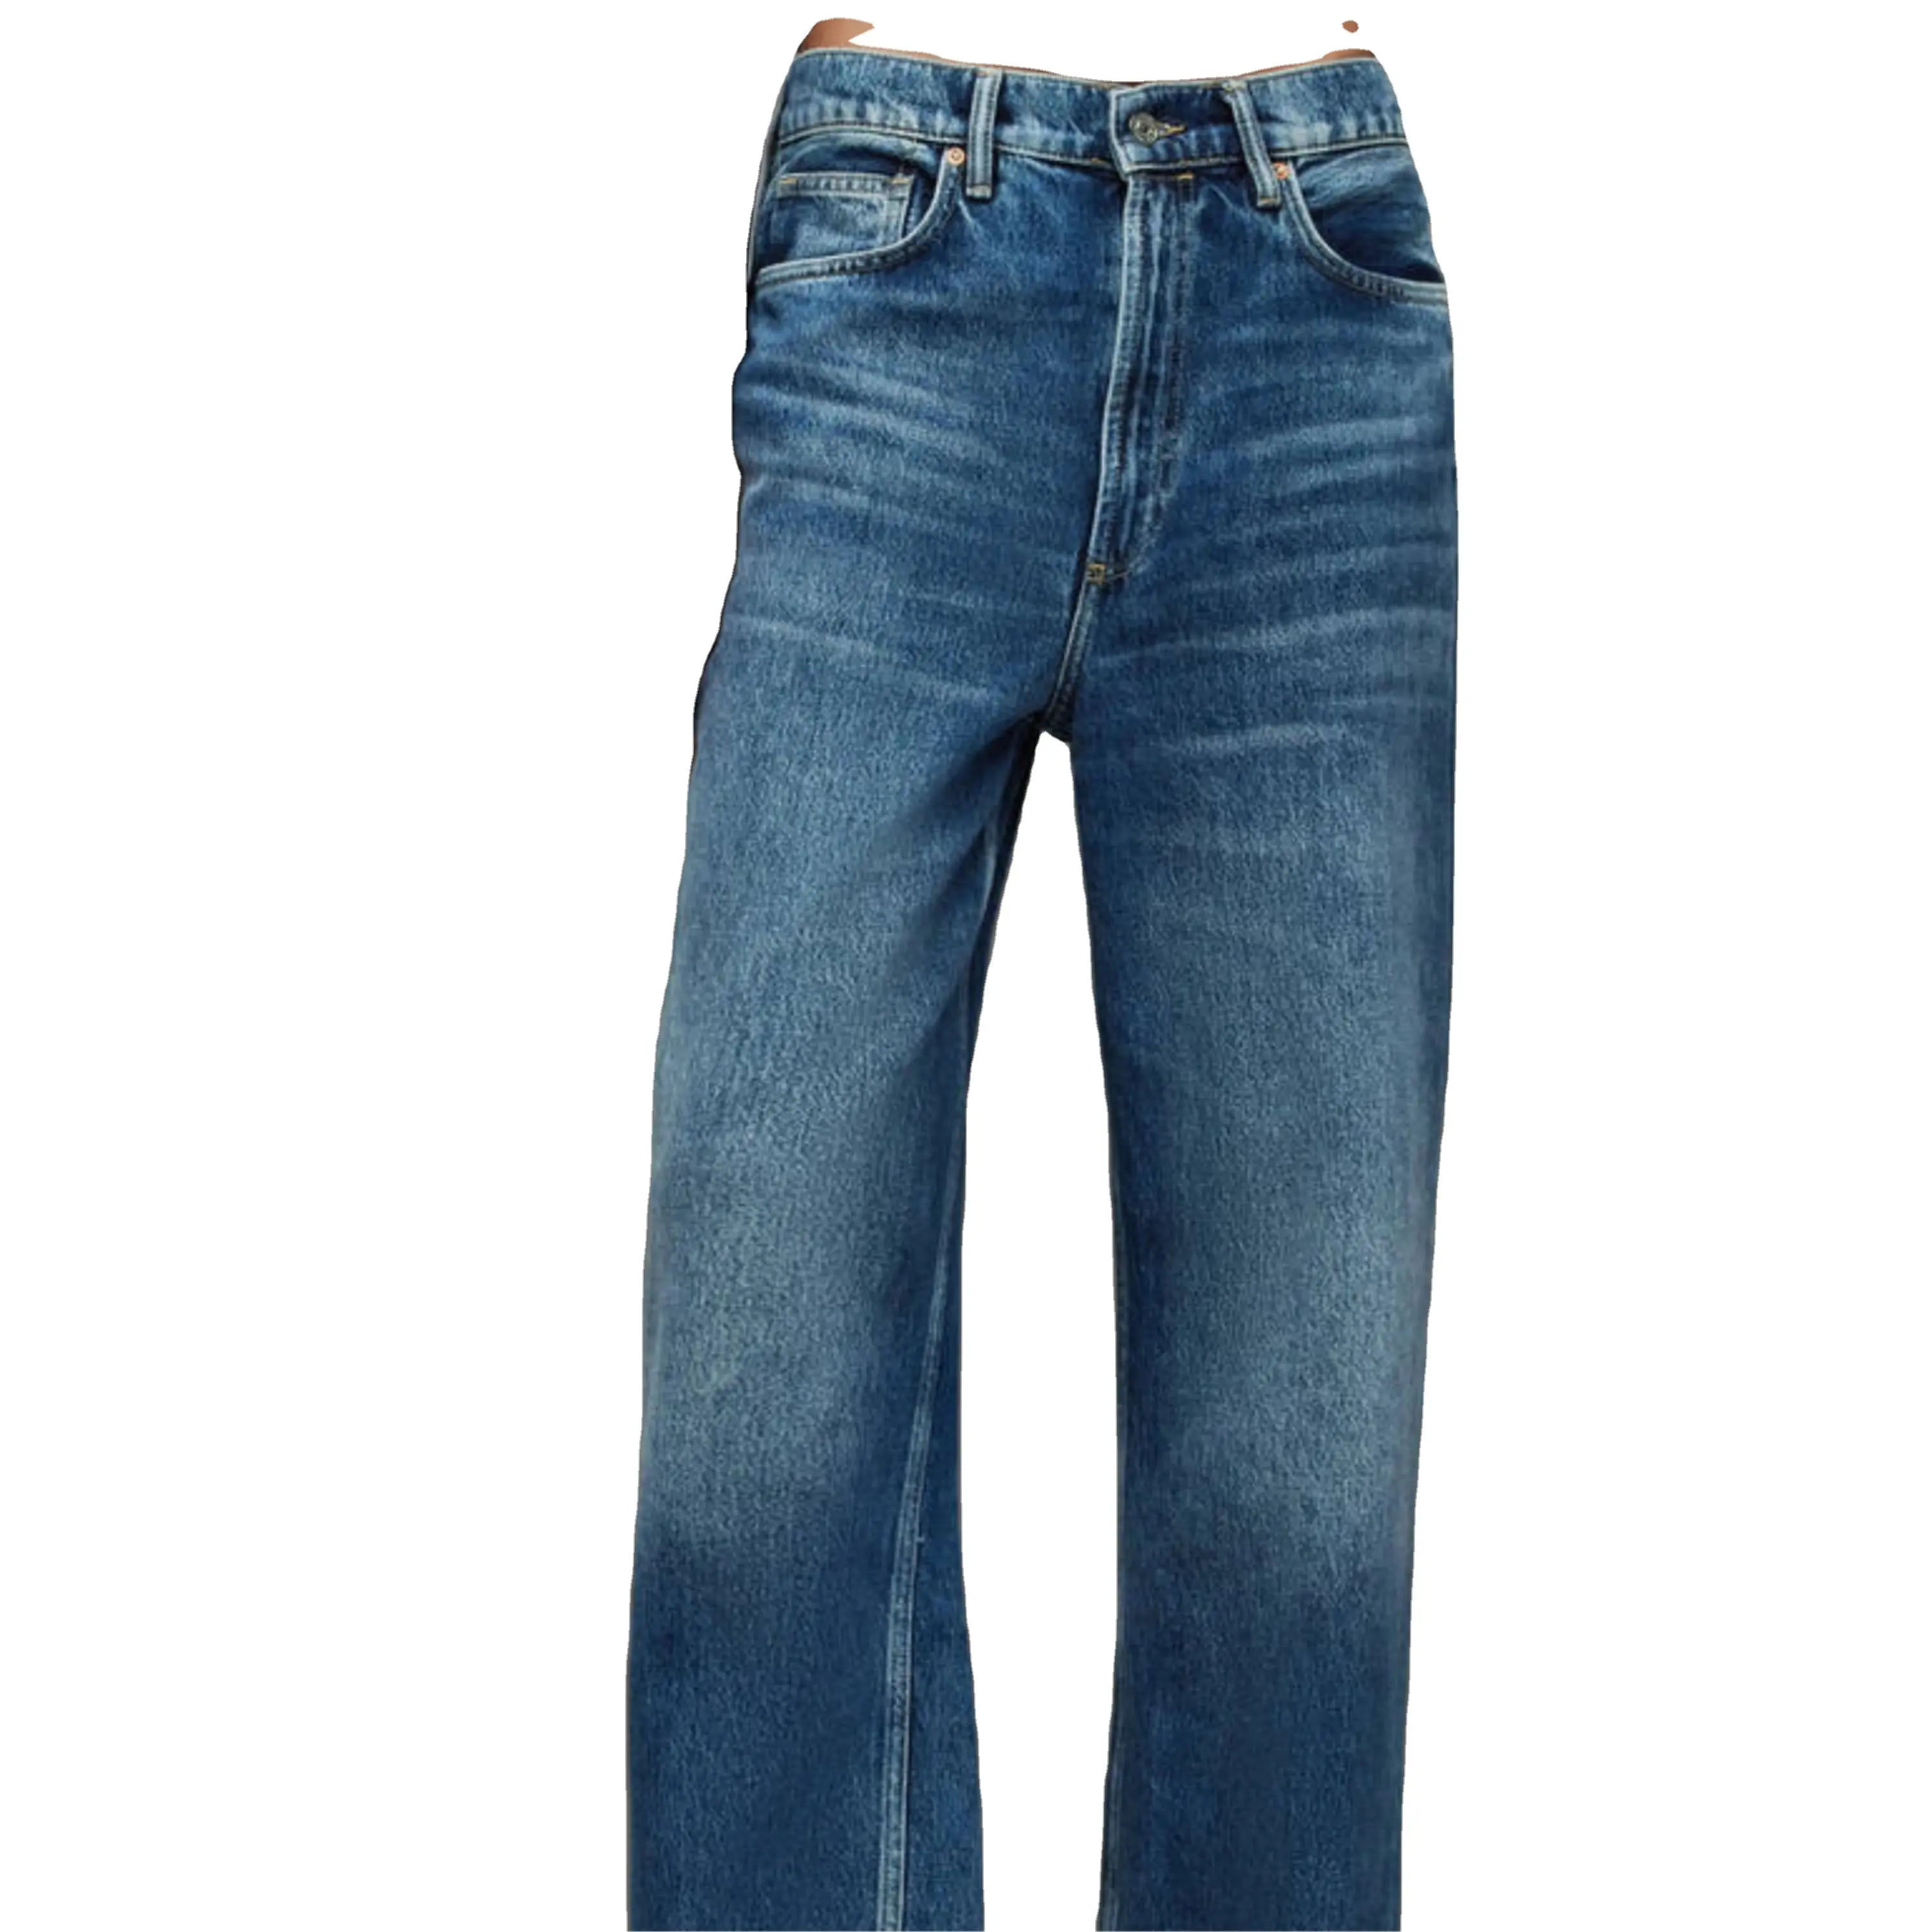 新工場ファッション卸売スキニーブランドのジーンズパンツプラスサイズストレートデニムジーンズ女性